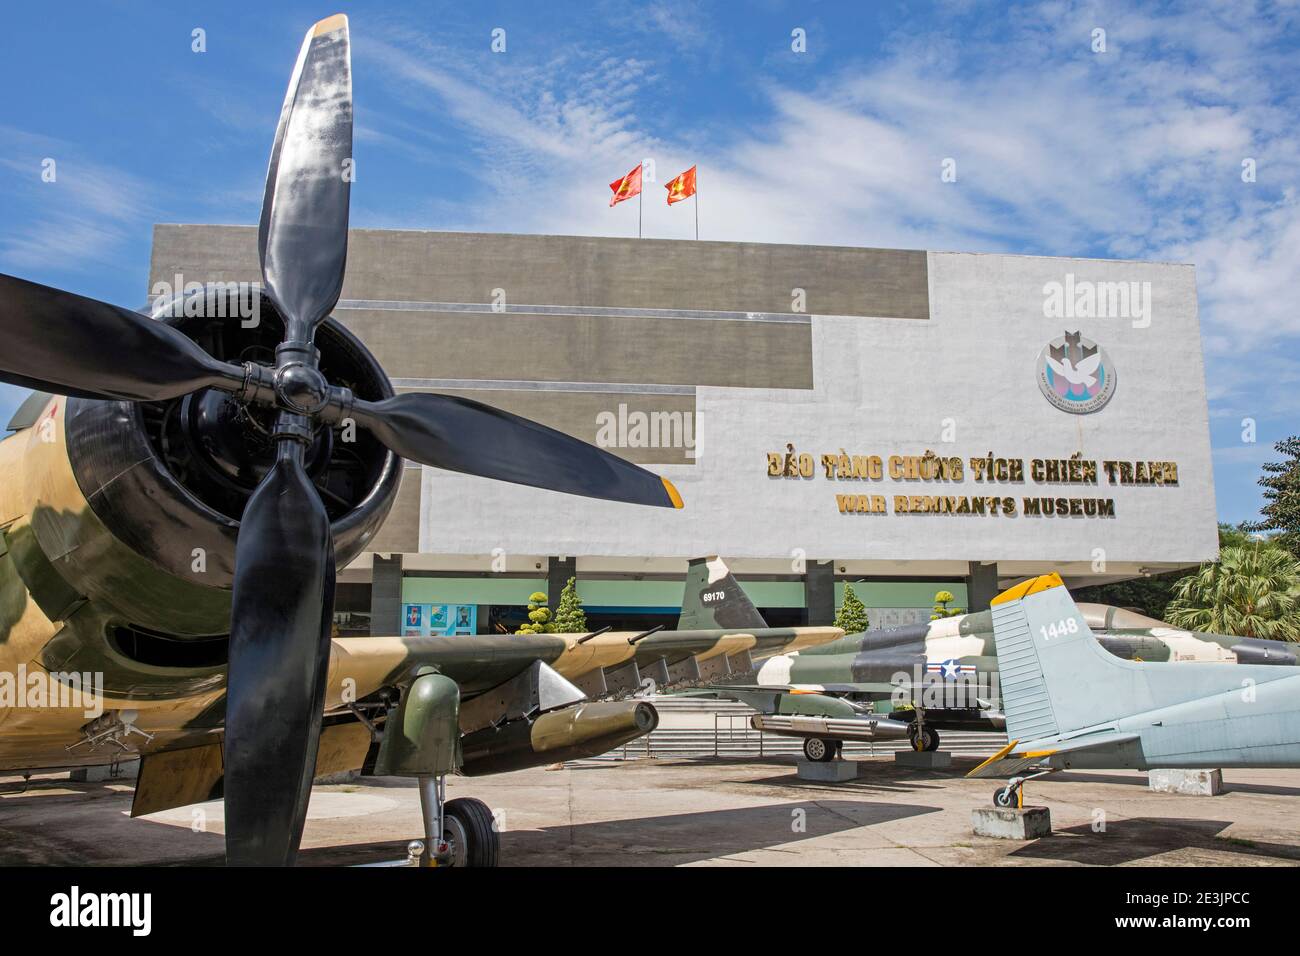 Avions de guerre devant le Musée des vestiges de guerre relatif à la première Indochine et à la guerre du Vietnam à Ho Chi Minh ville, district 3, ancien Saigon, Vietnam Banque D'Images